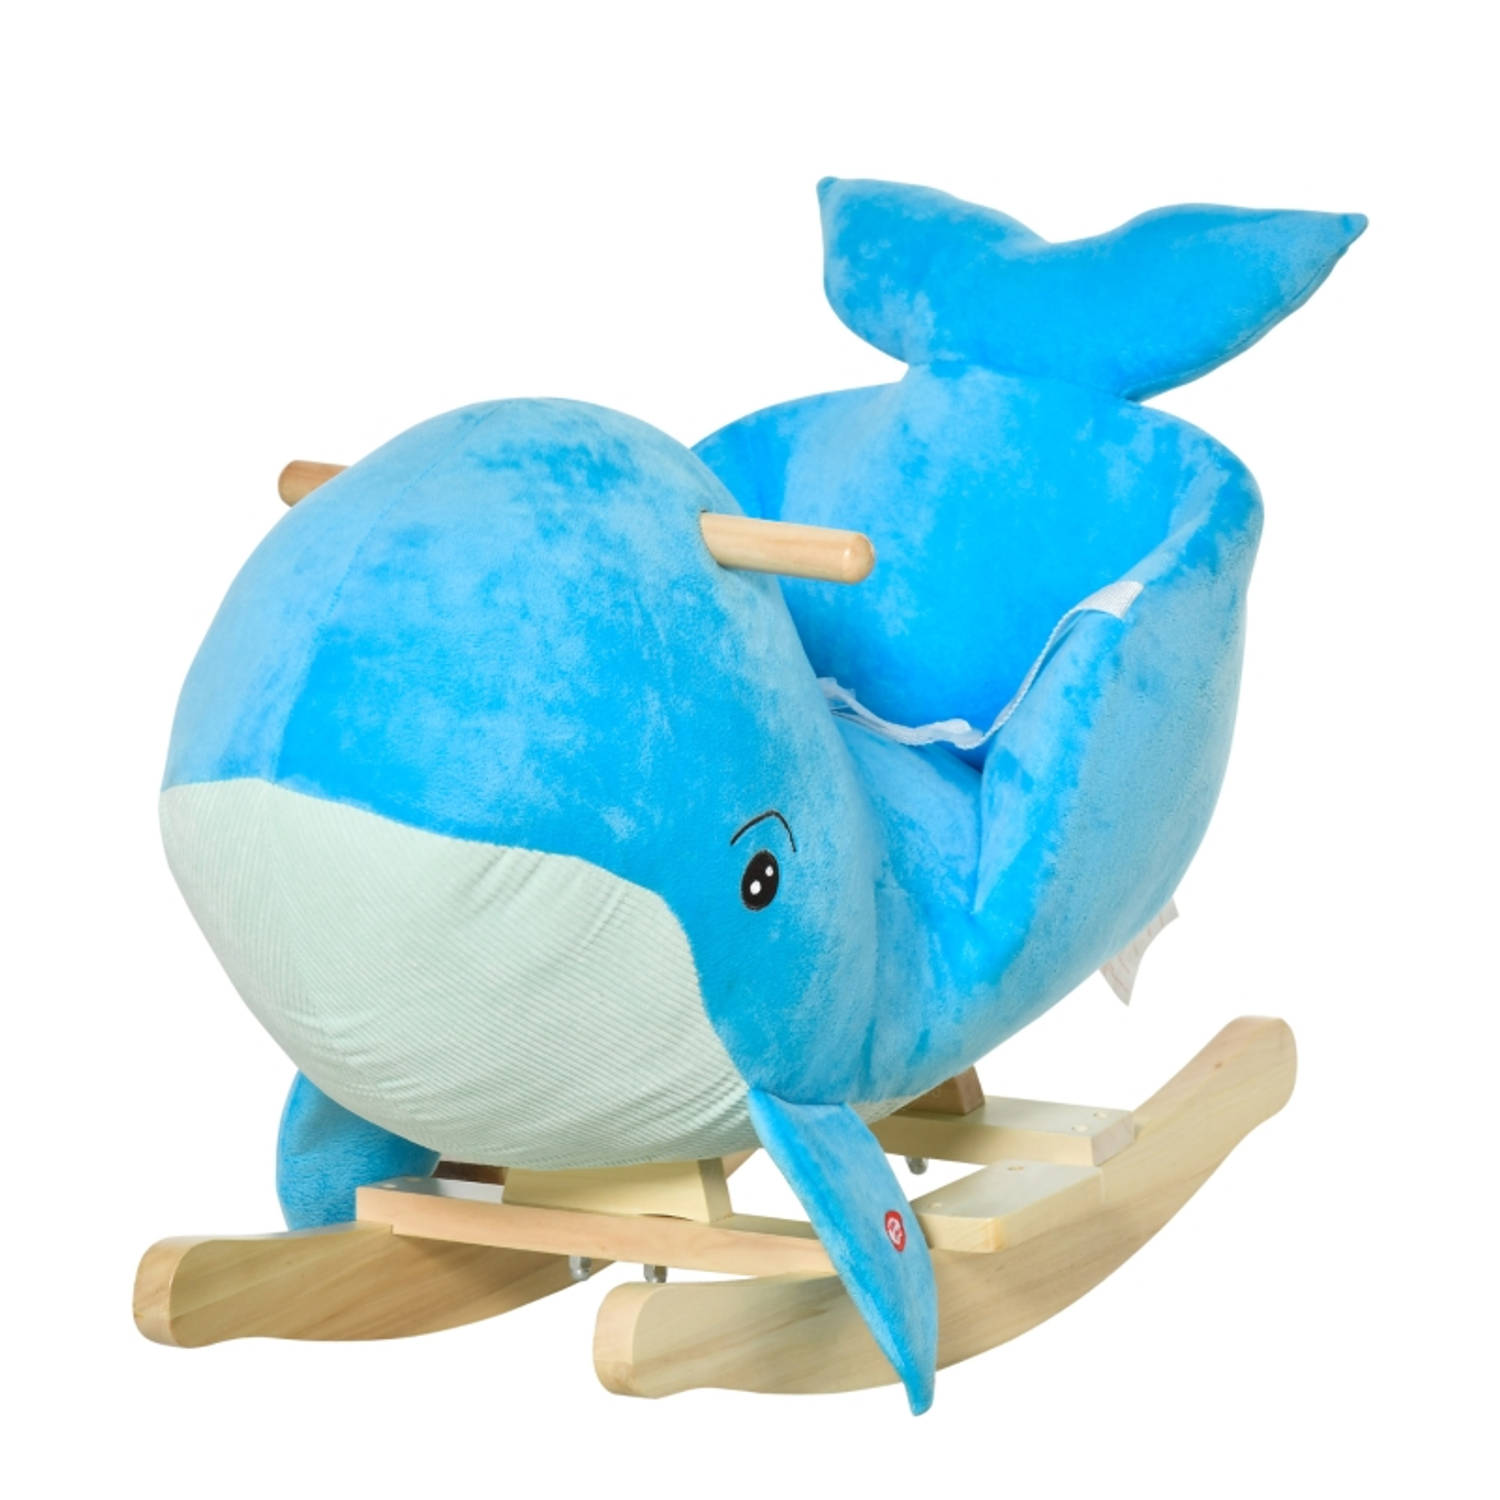 Hobbeldier Hobbelpaard Schommelpaard Schommelstoel voor Kinderen Speelgoed Blauw 60 x 33 x 50 cm